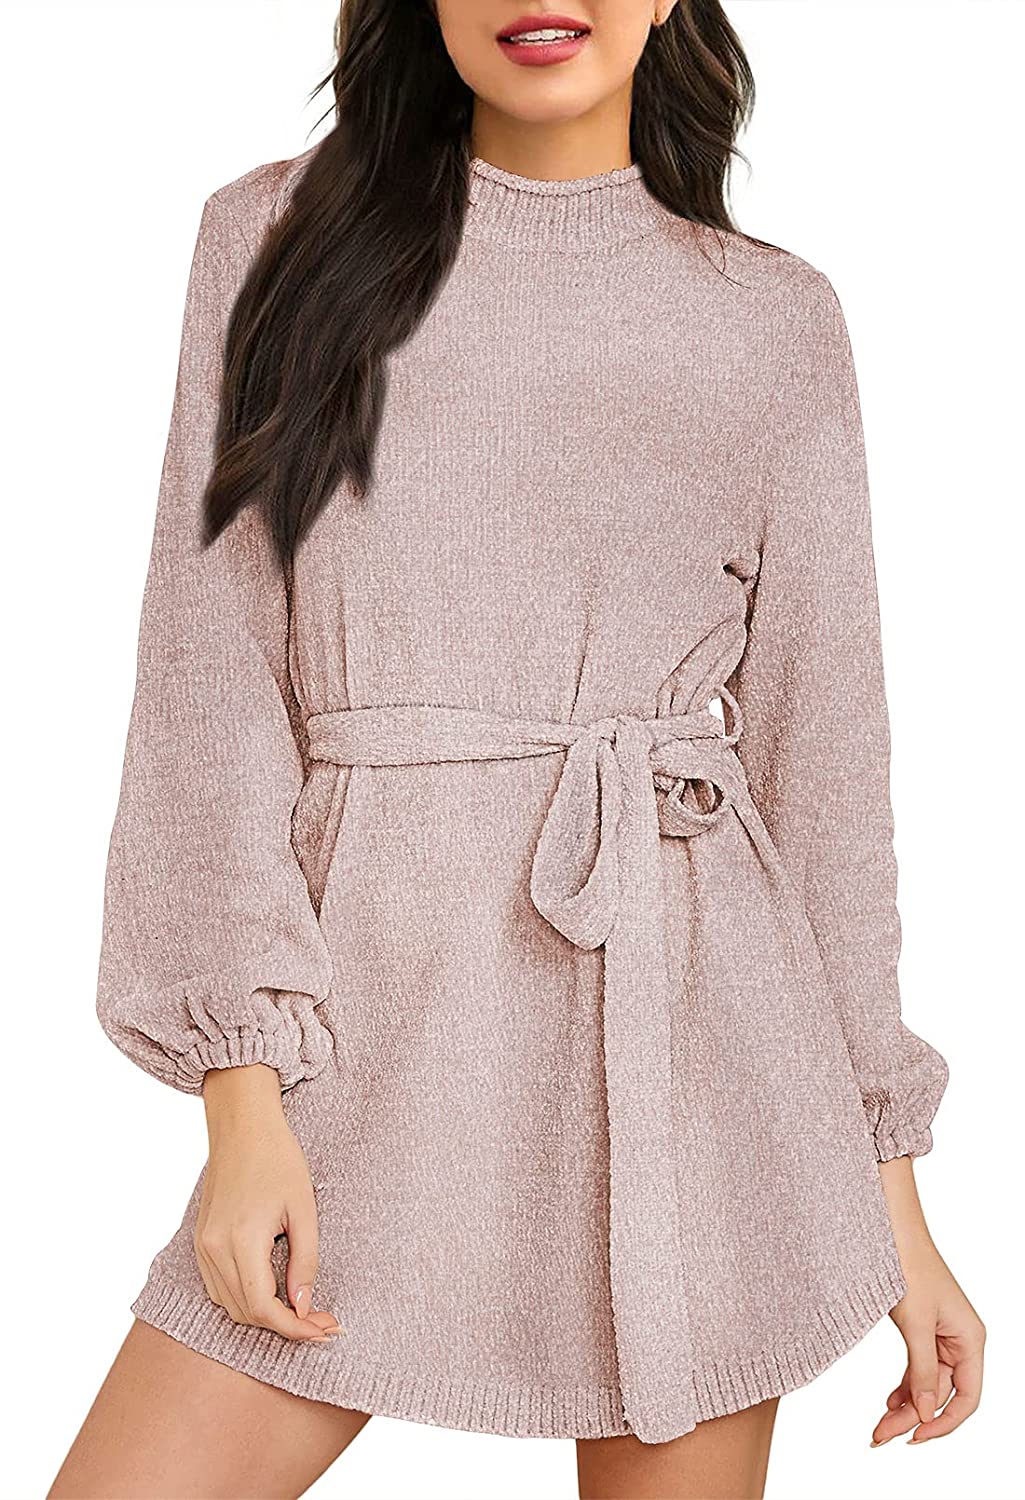 Buy HAPCOPE Women's Chenille Sweater Dress Mock Neck Lantern Long